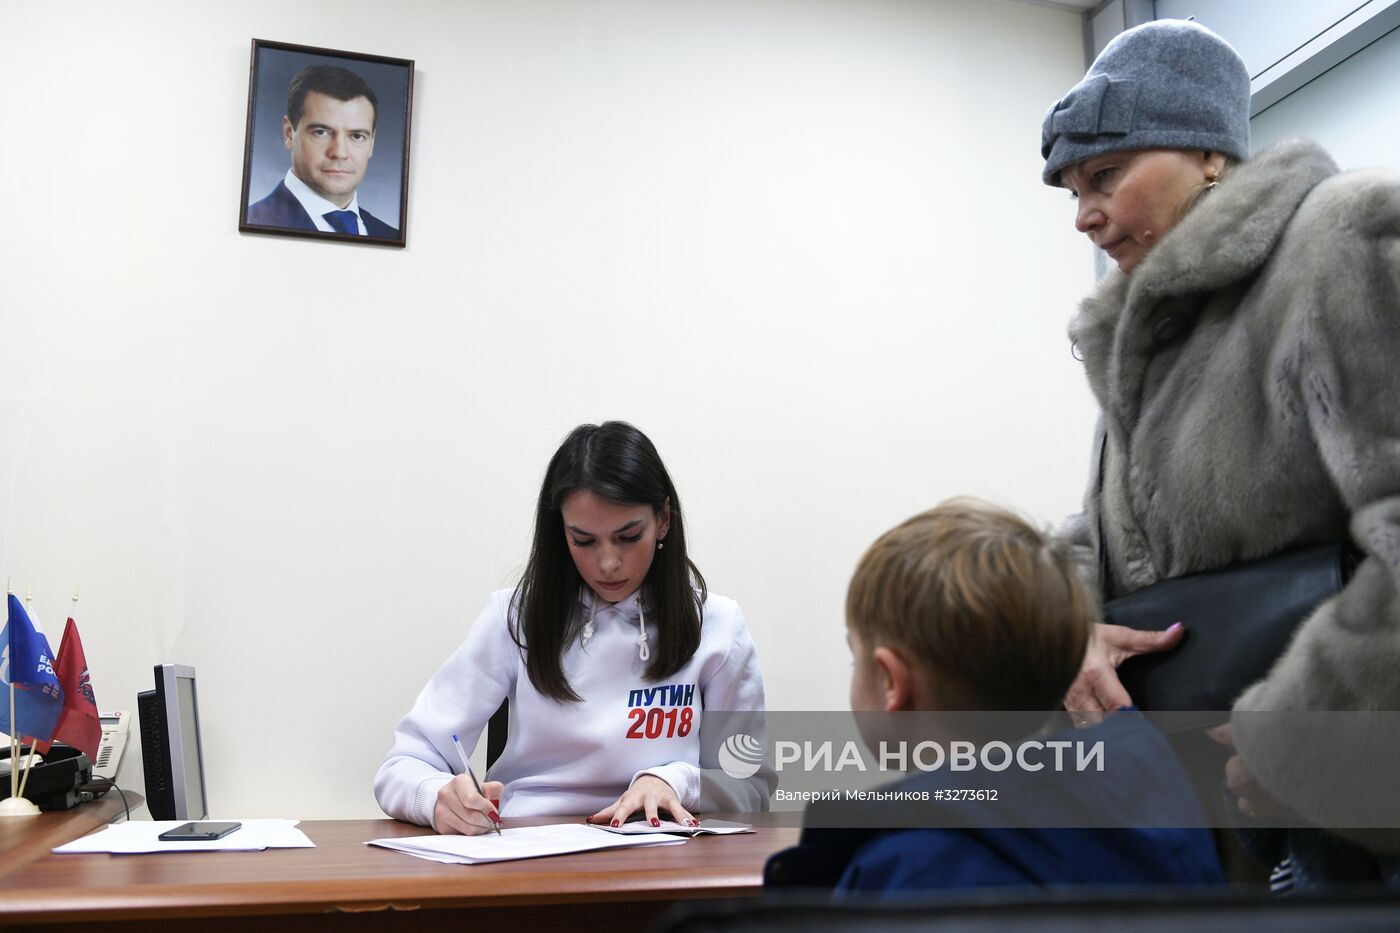 Сбор подписей в поддержку кандидата в президенты России Владимира Путина